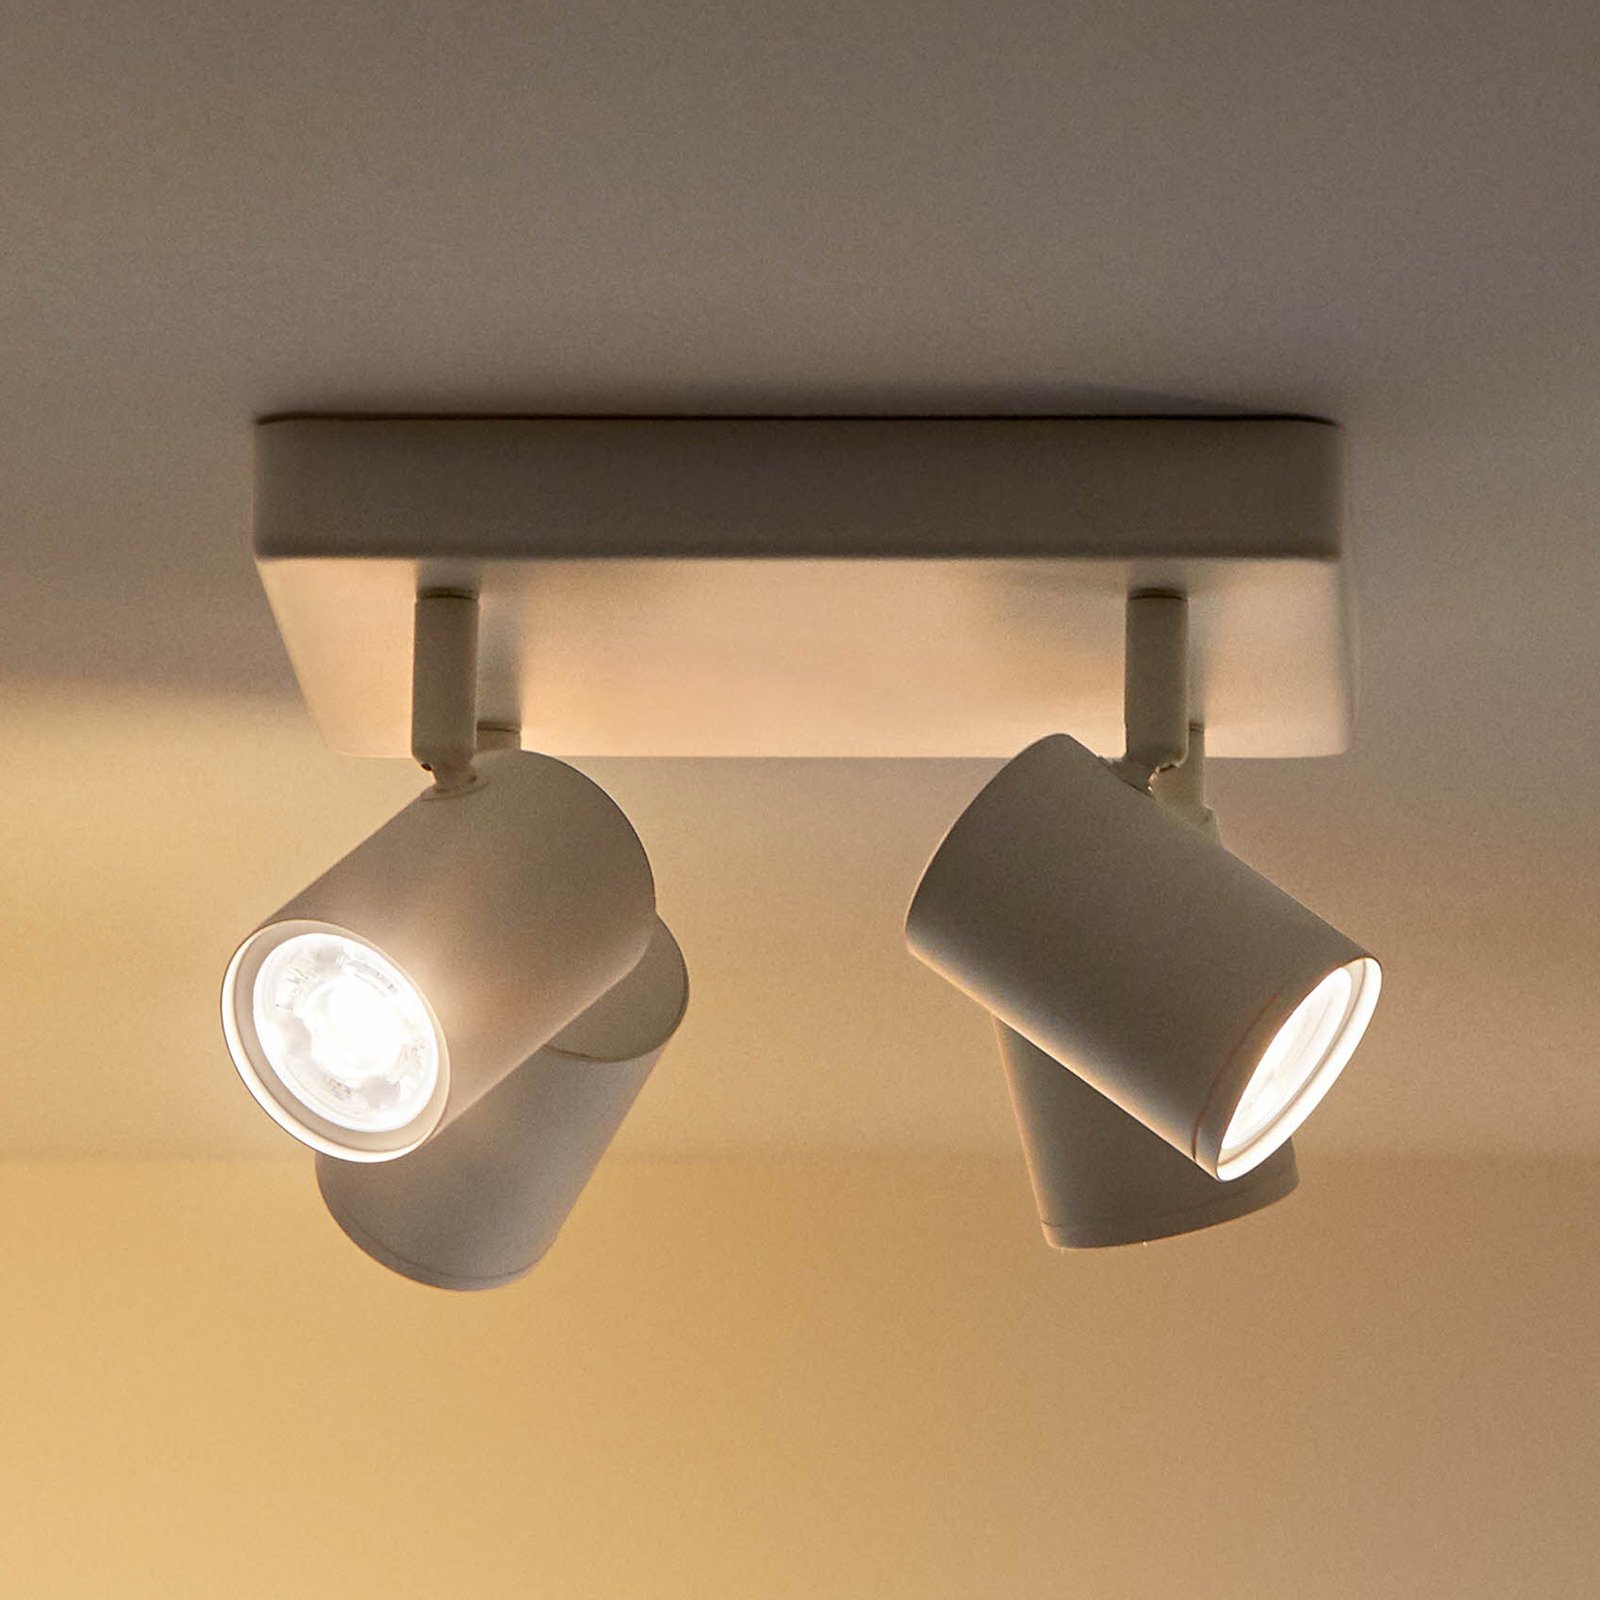 WiZ spot LED soffitto Imageo, 4 luci bianco